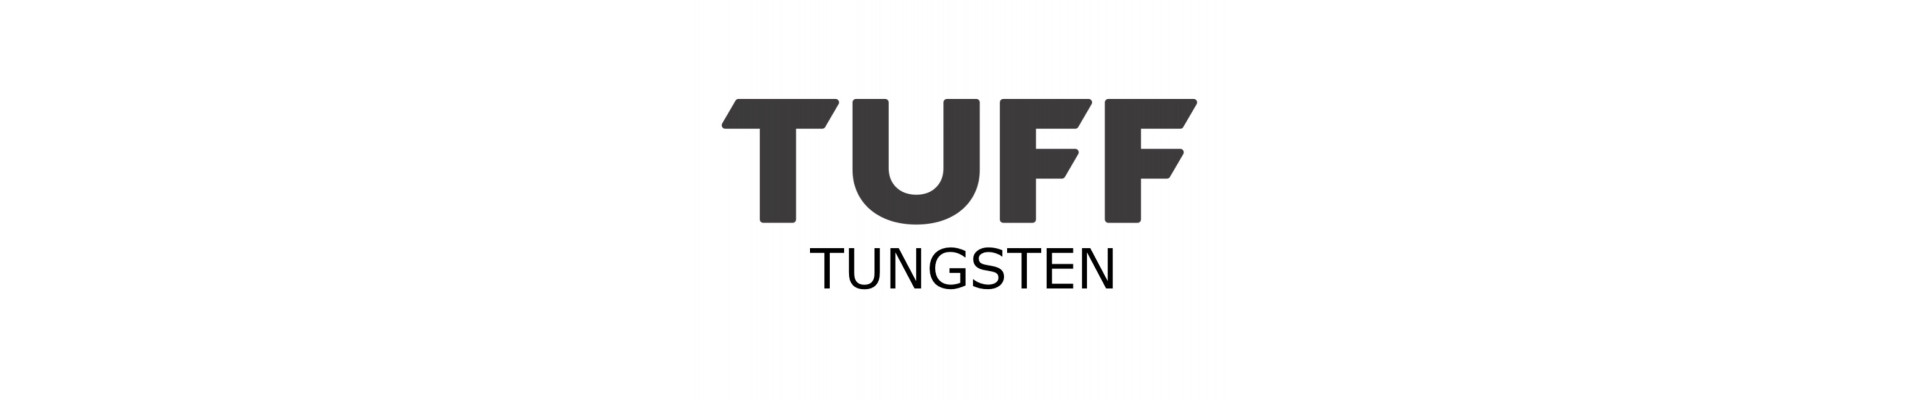 TUFF Tungsten